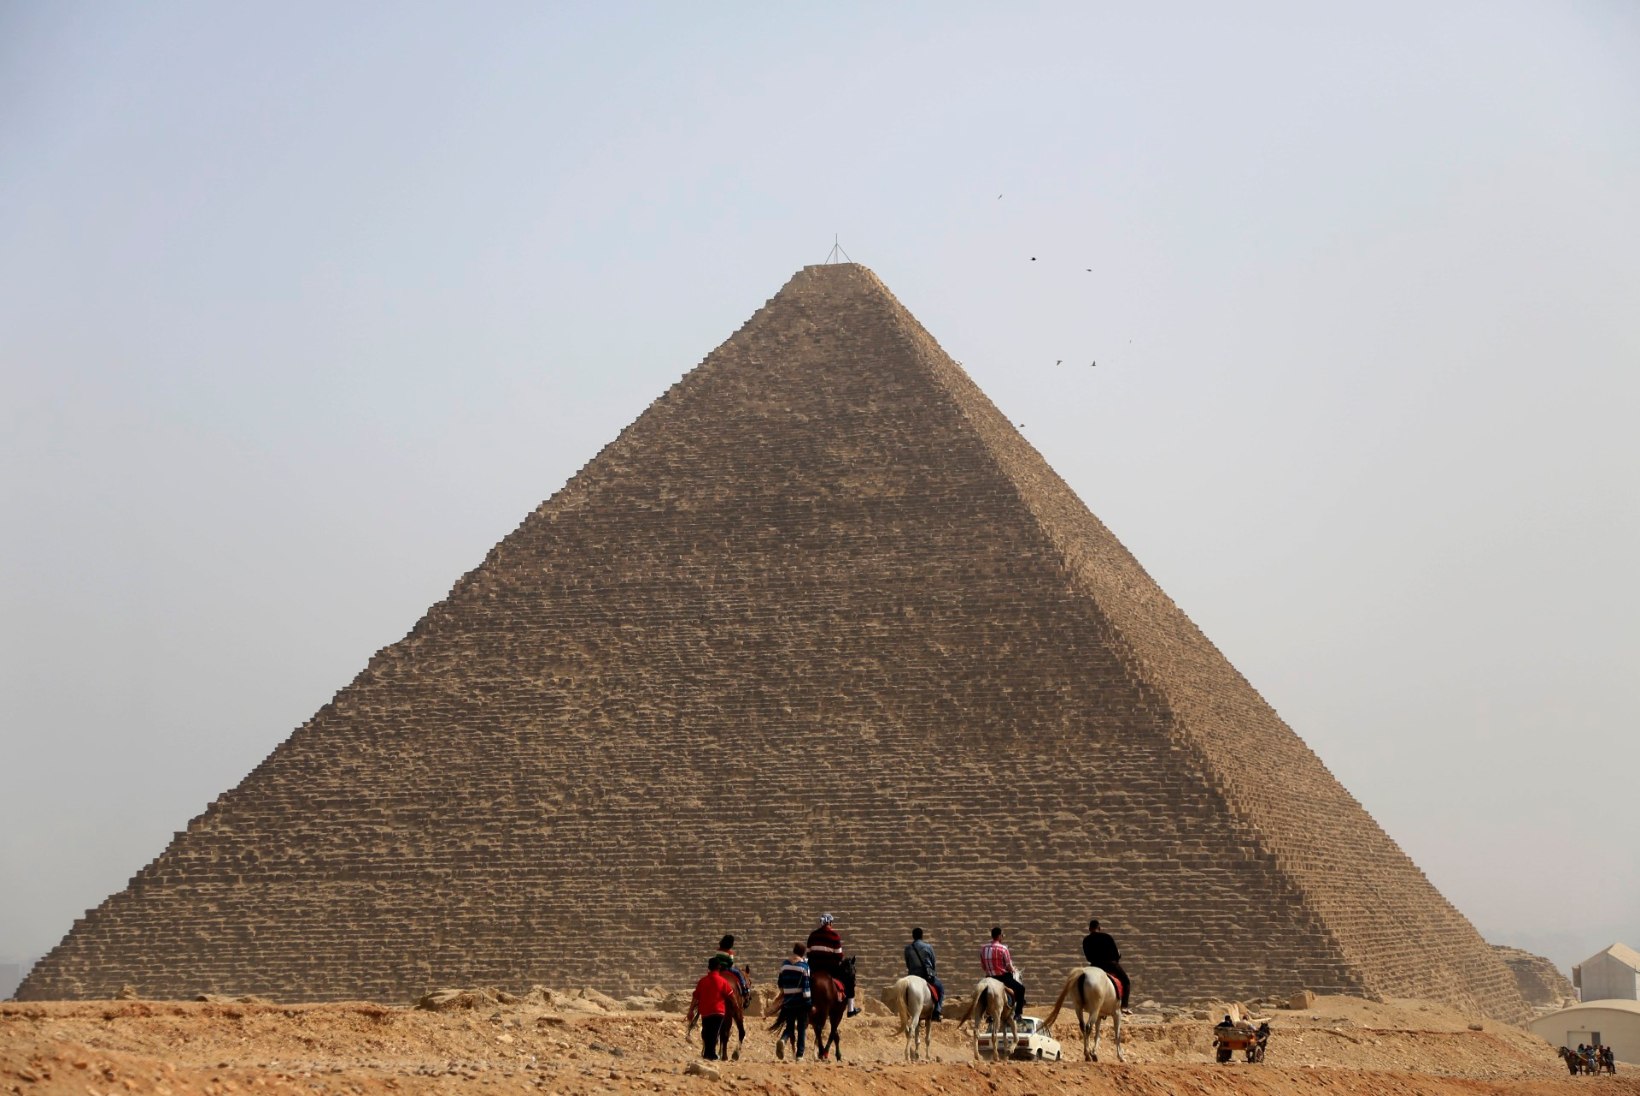 Klient võib ilma jääda kogu Egiptuse reisile läinud rahast